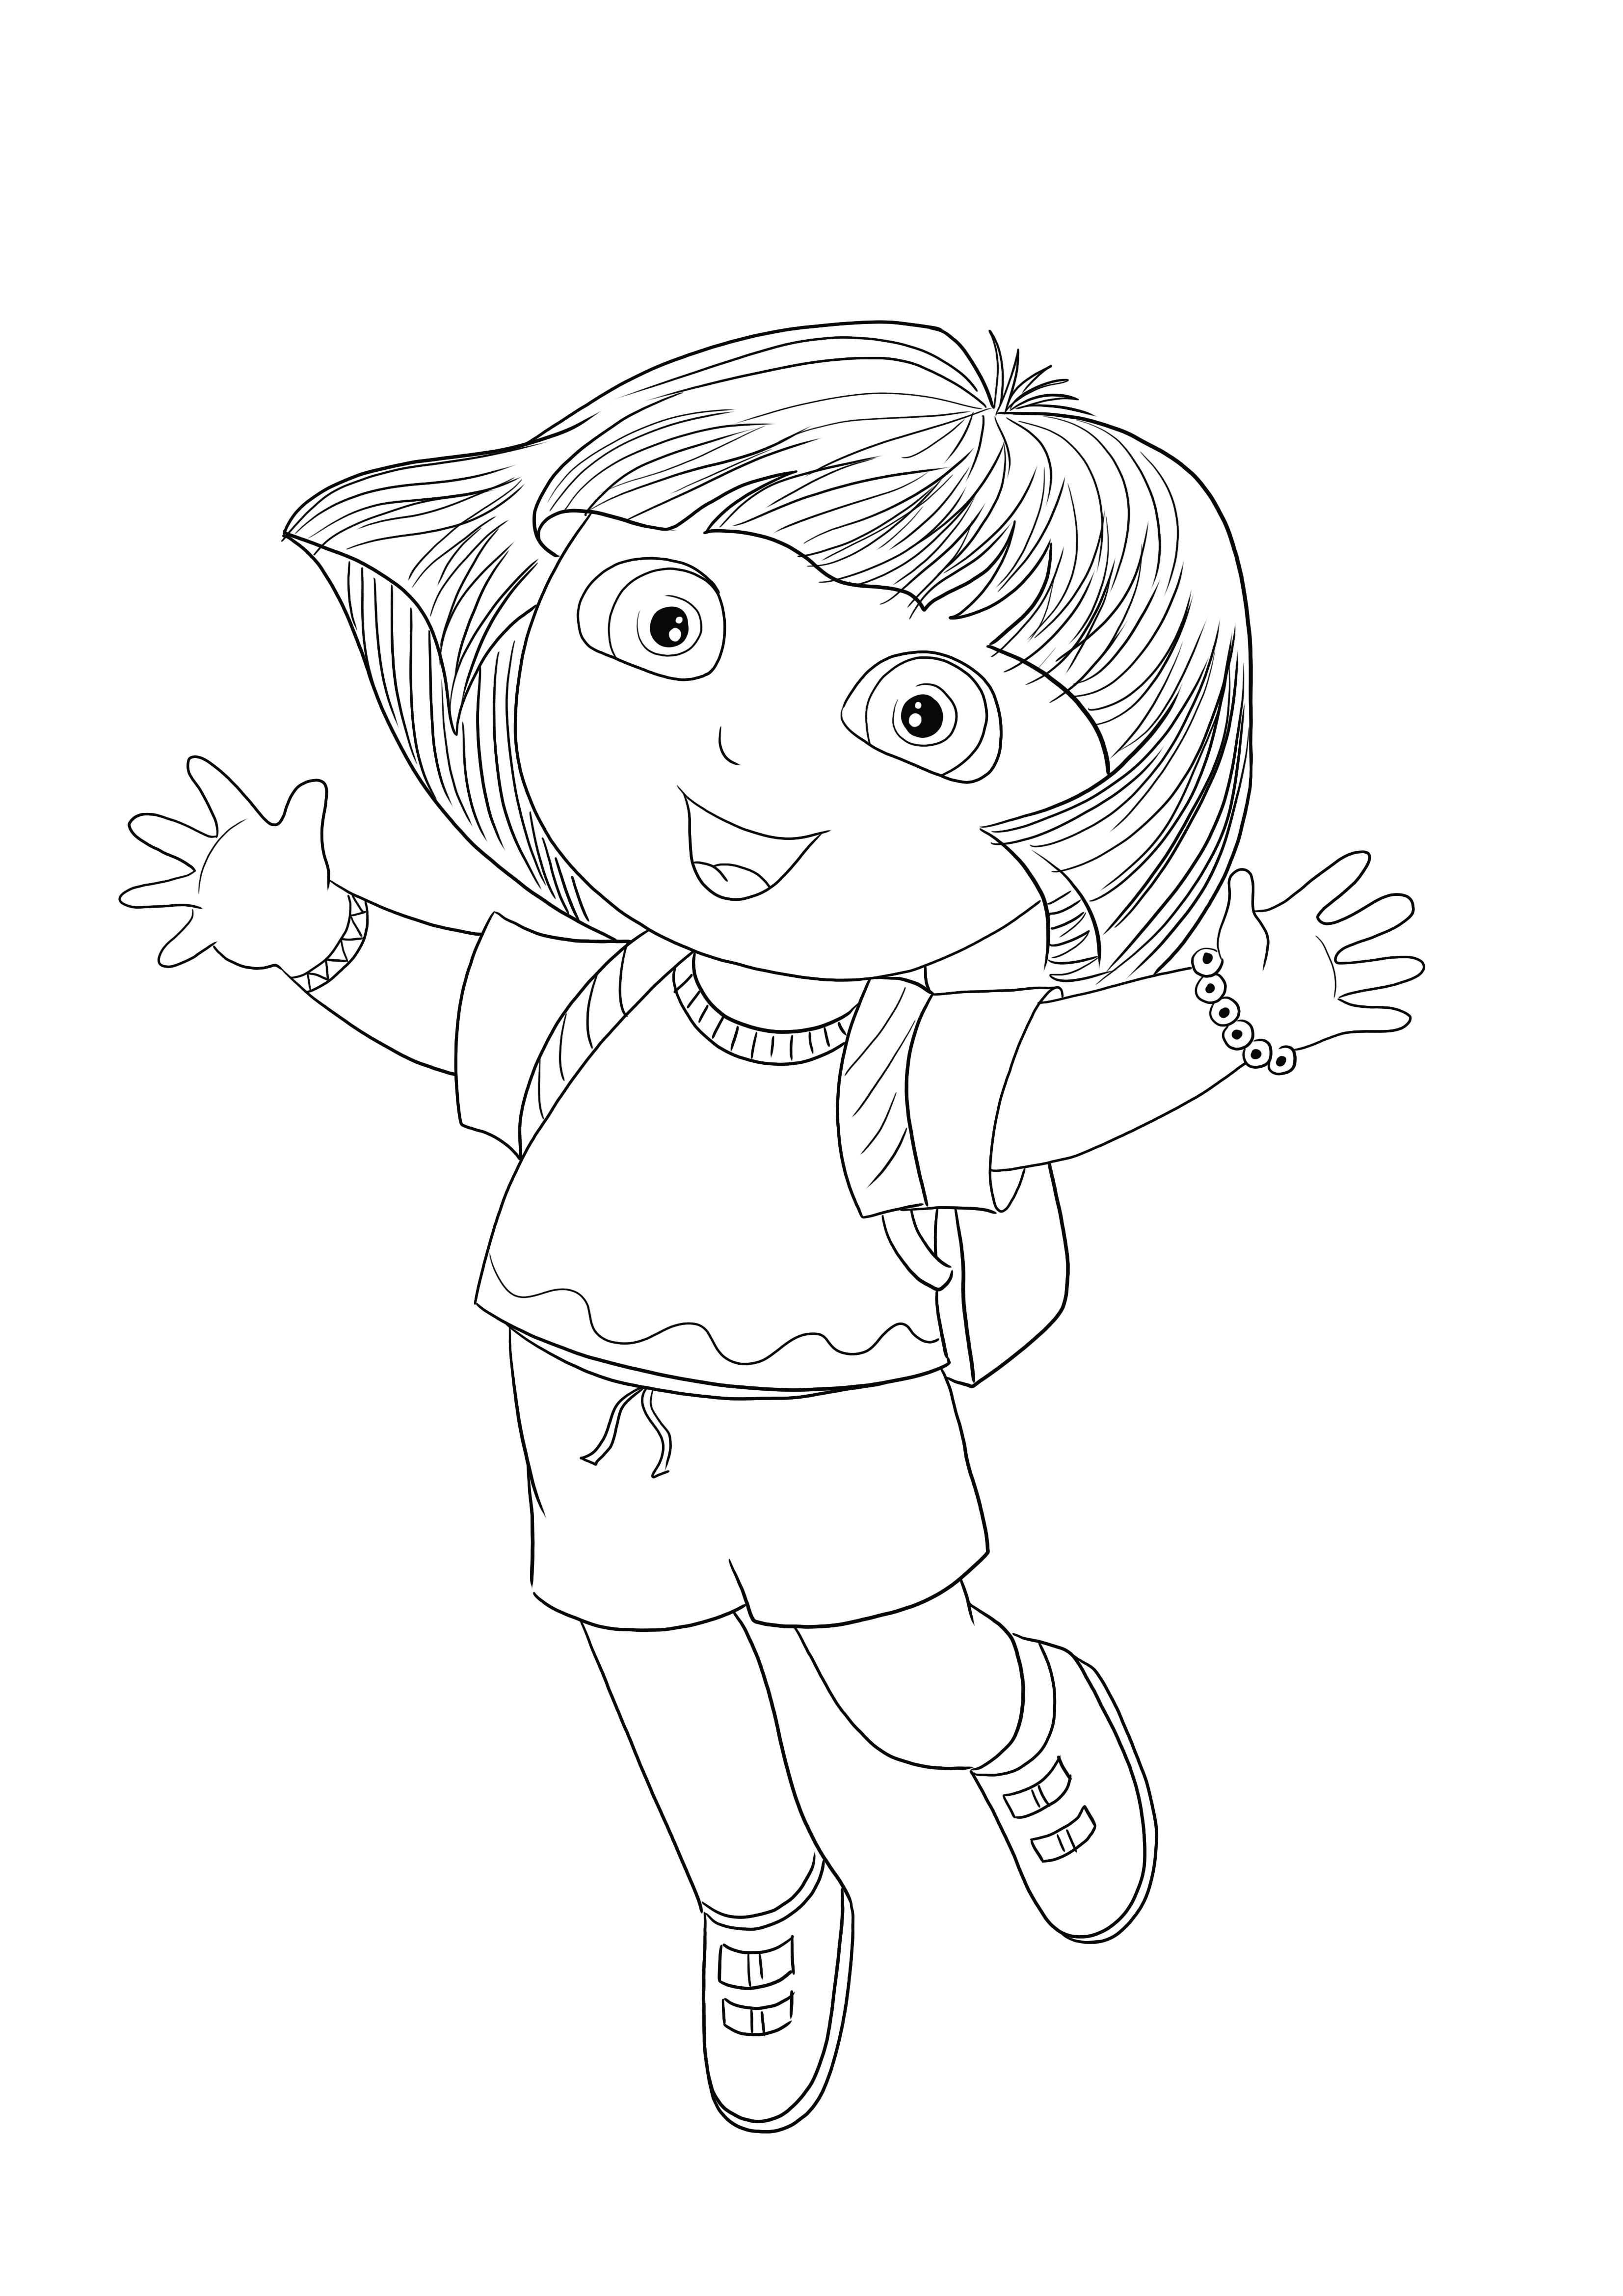 Happy Dora springt, denn sie lässt sich gerne von ihren Fans kostenlos ausmalen und bedrucken